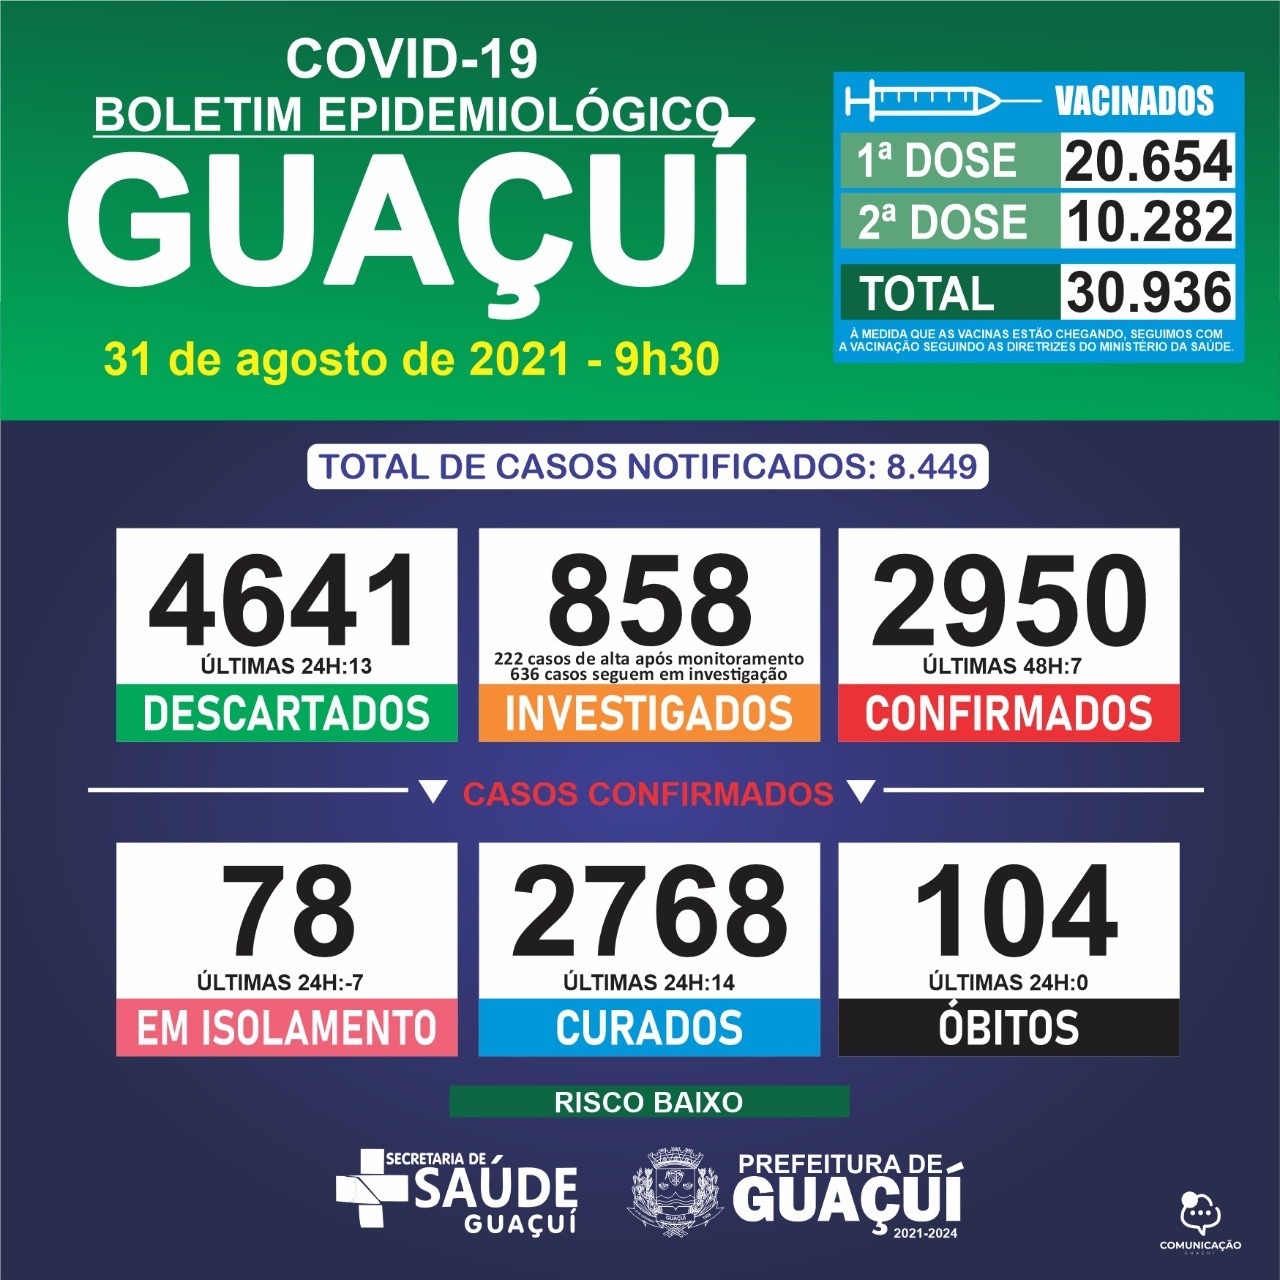 Boletim Epidemiológico 31/08/21: Guaçuí registra 7 casos confirmados e 14 curados nas últimas 24 horas